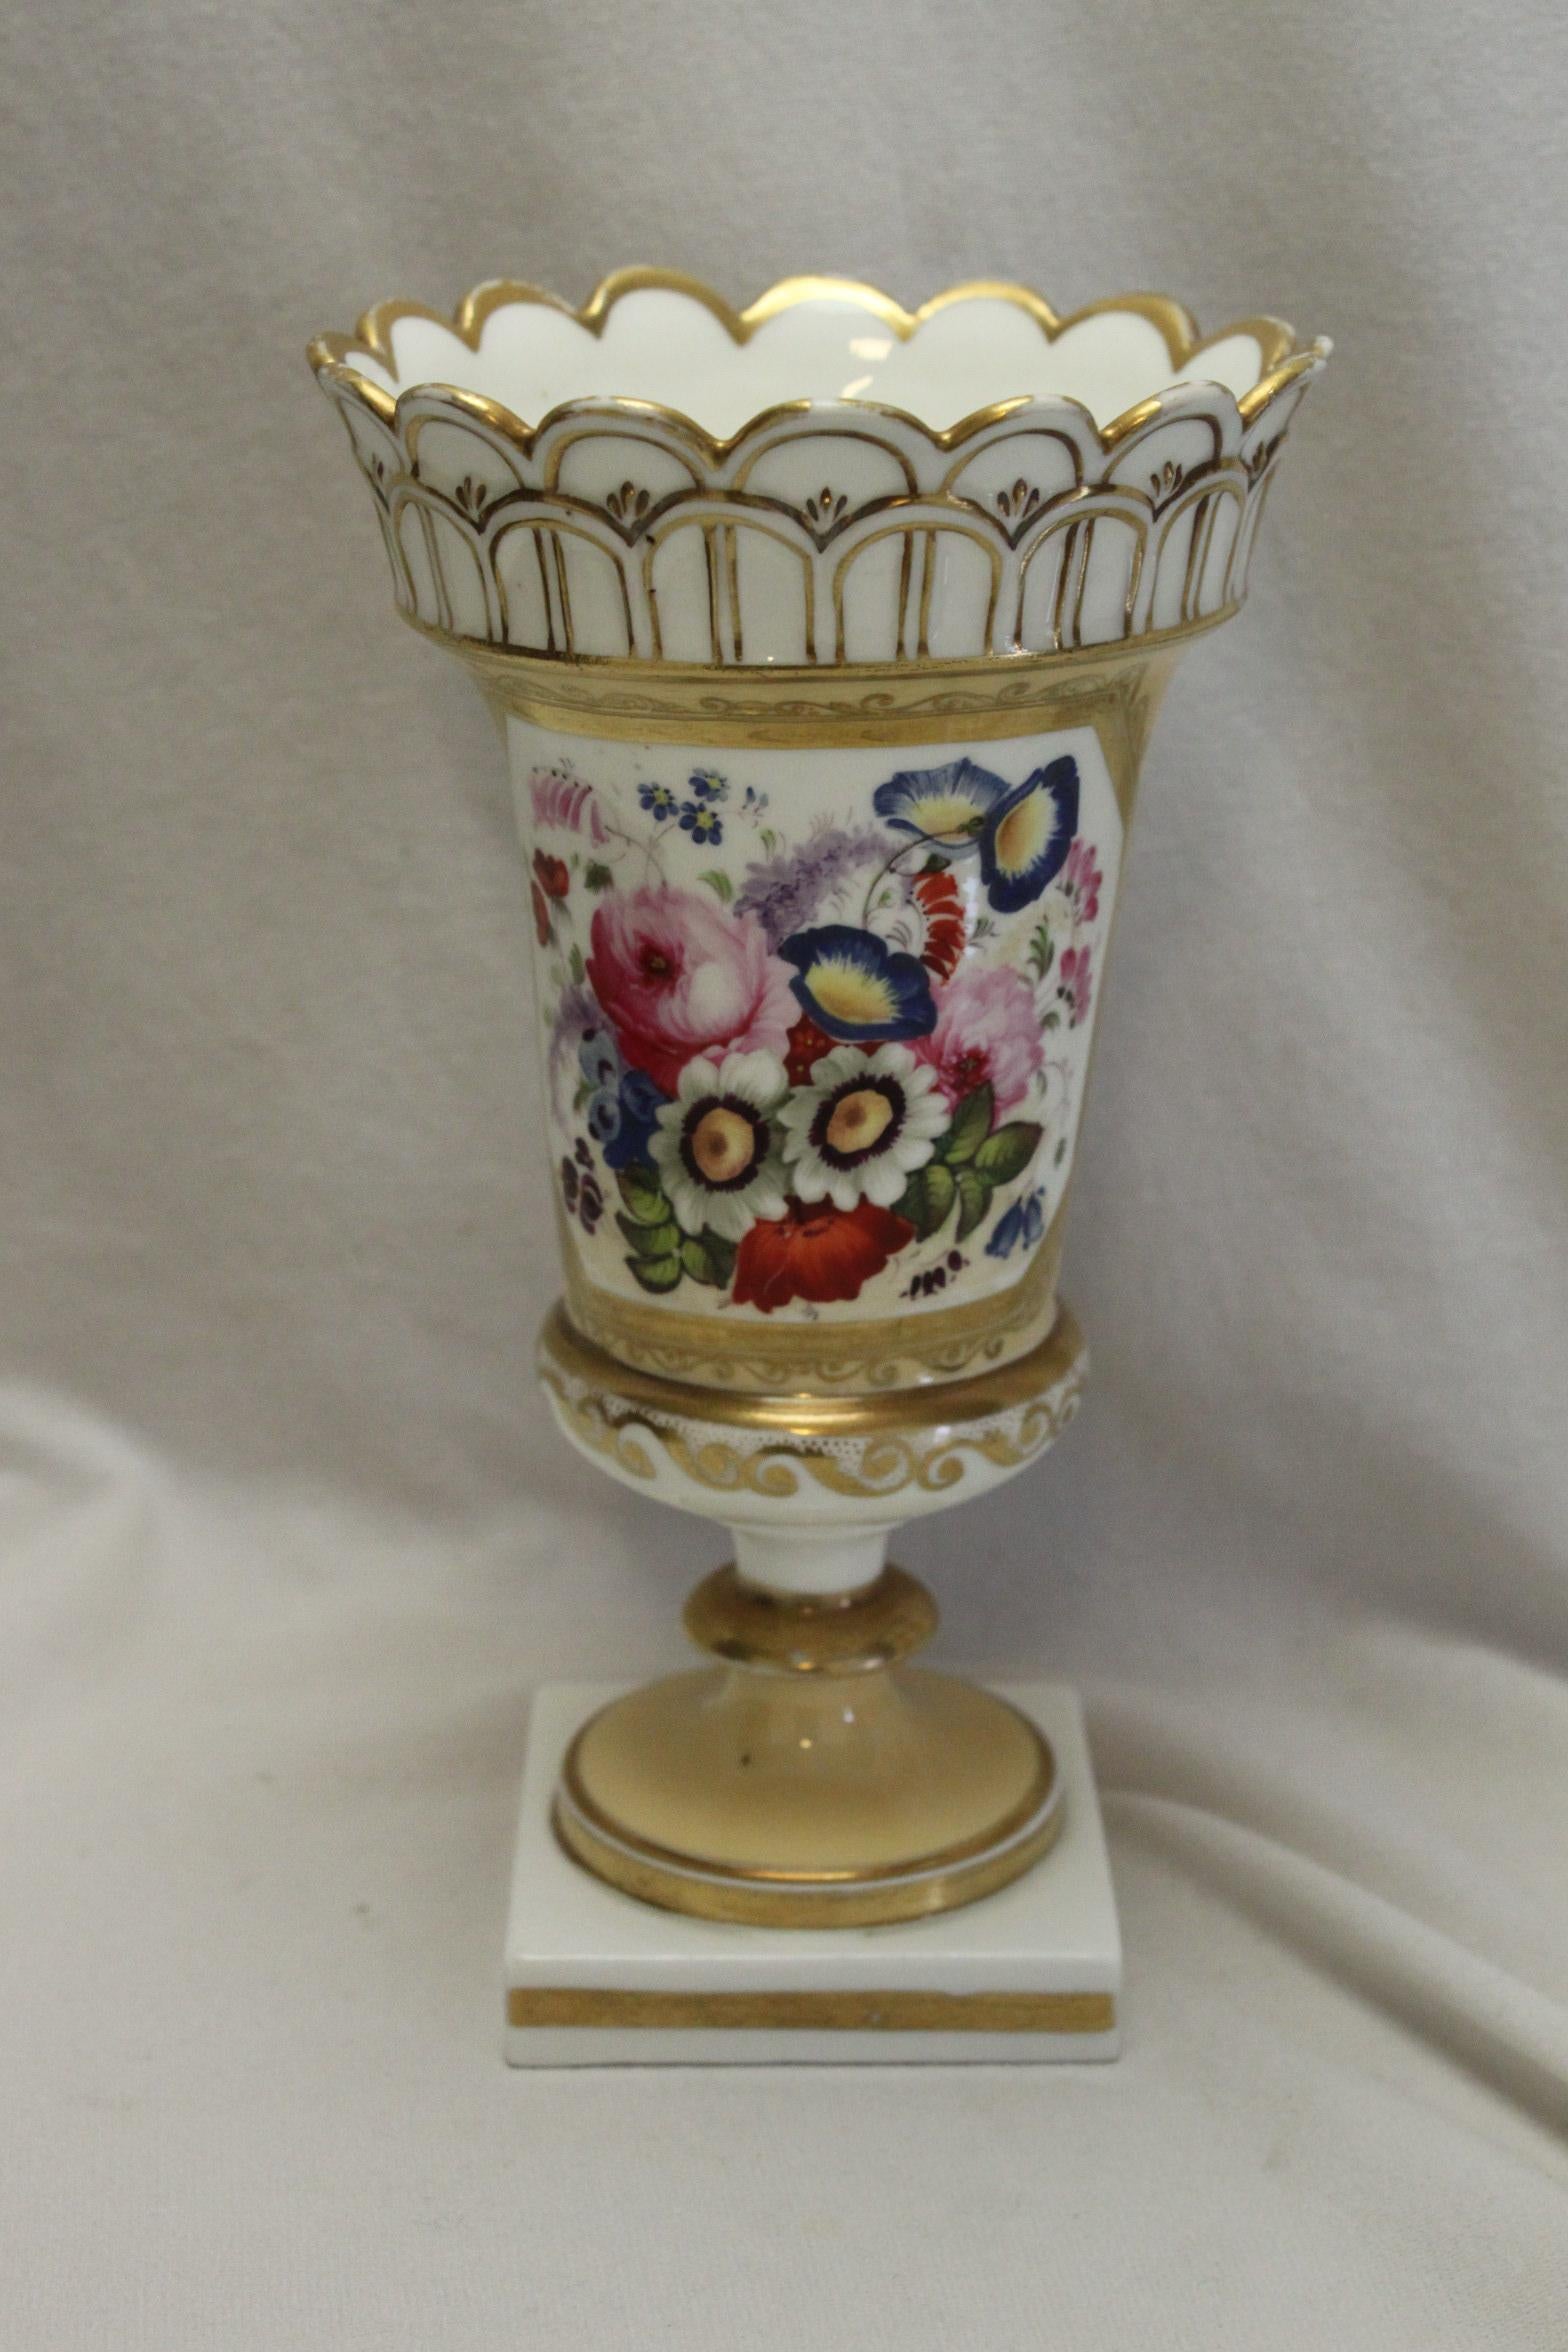 Ce très joli vase en porcelaine peint à la main et doré est attribué à Minton, de leur gamme 